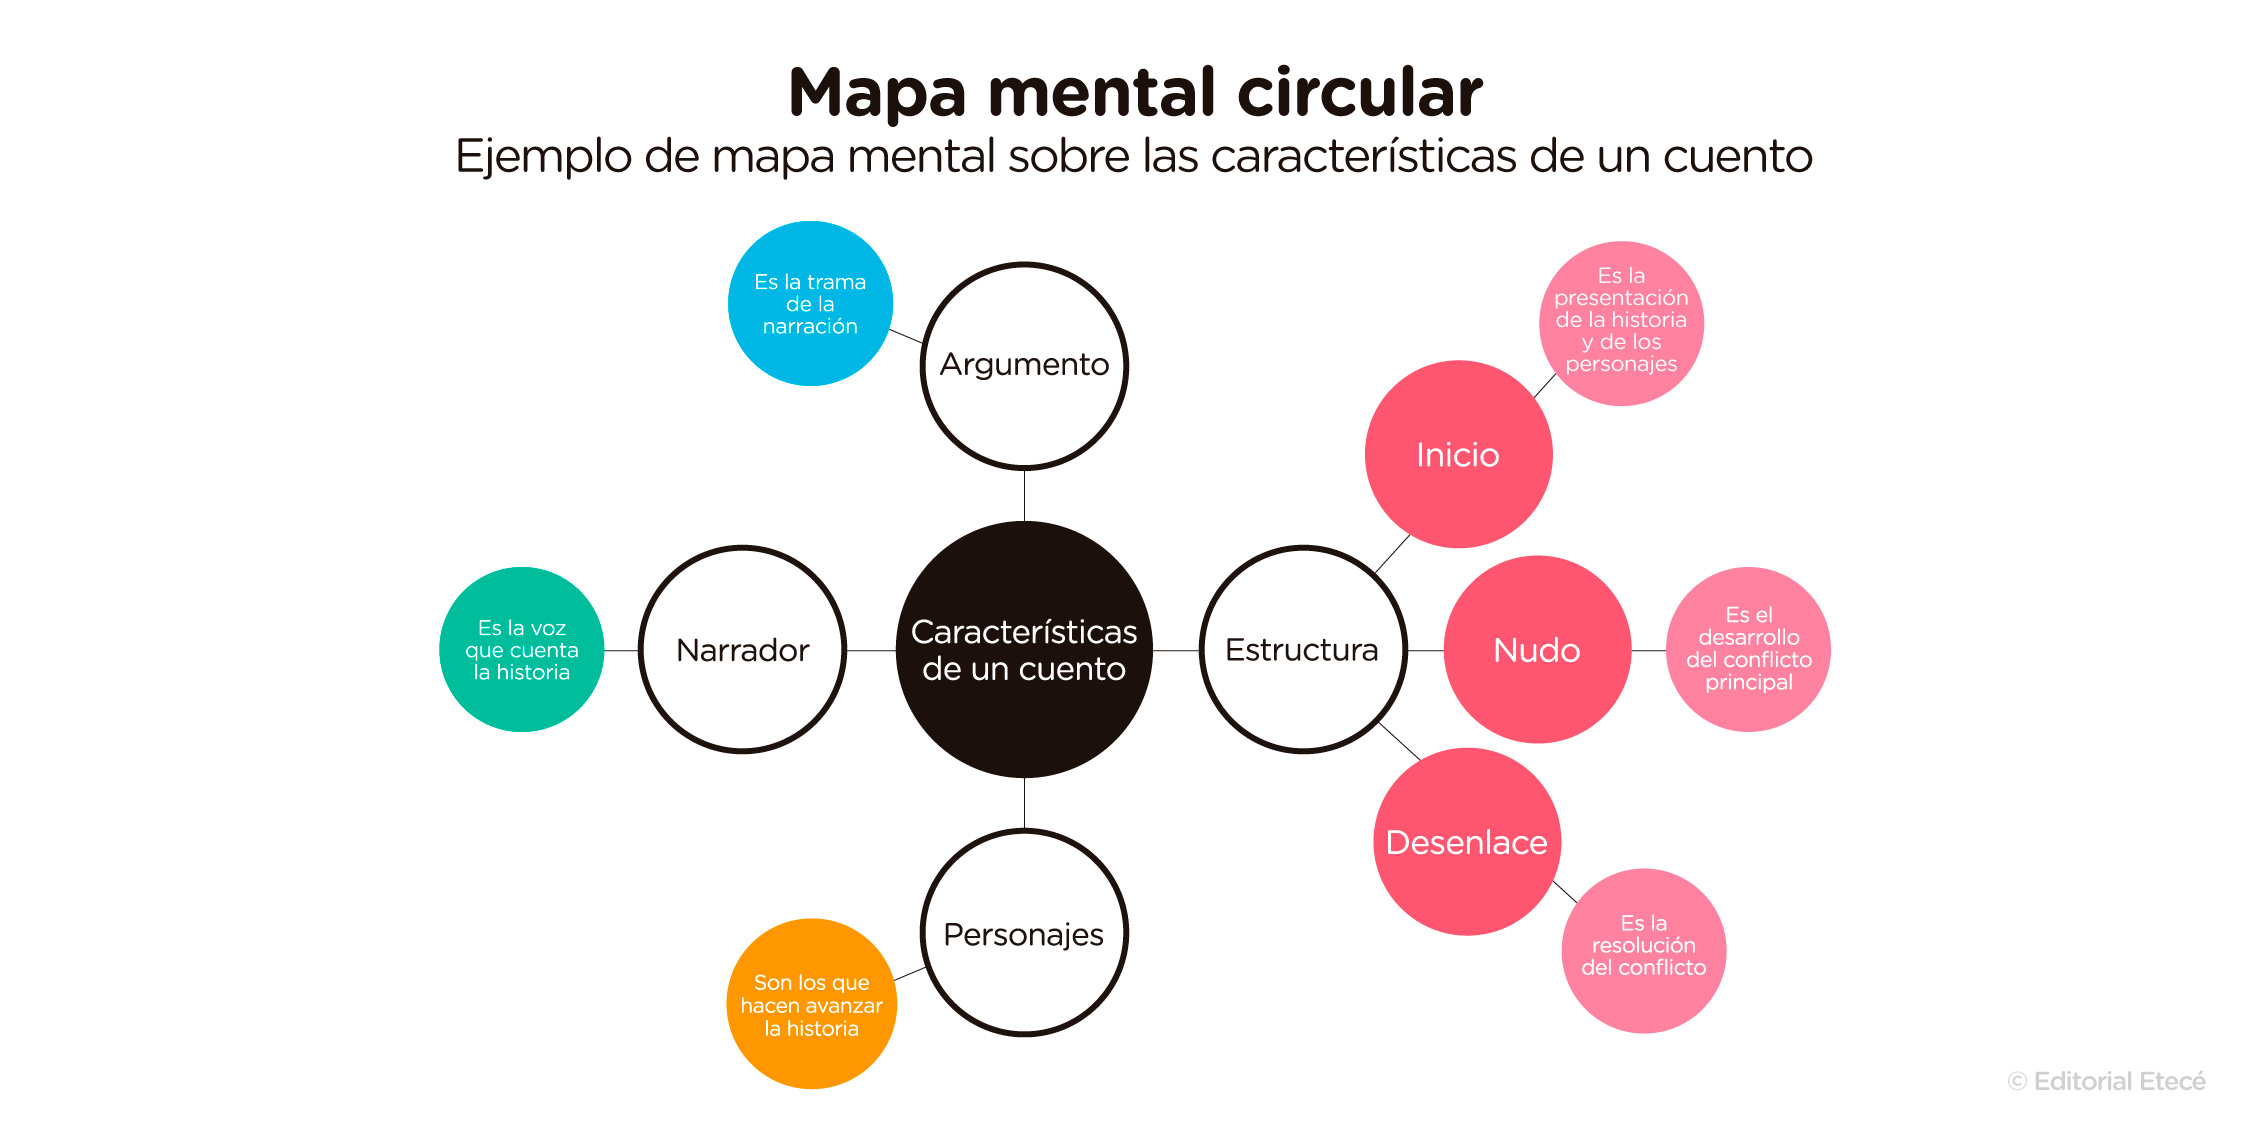 Un esquema circular es una forma de representar visualmente la información, donde el tema principal se ubica en el centro y l